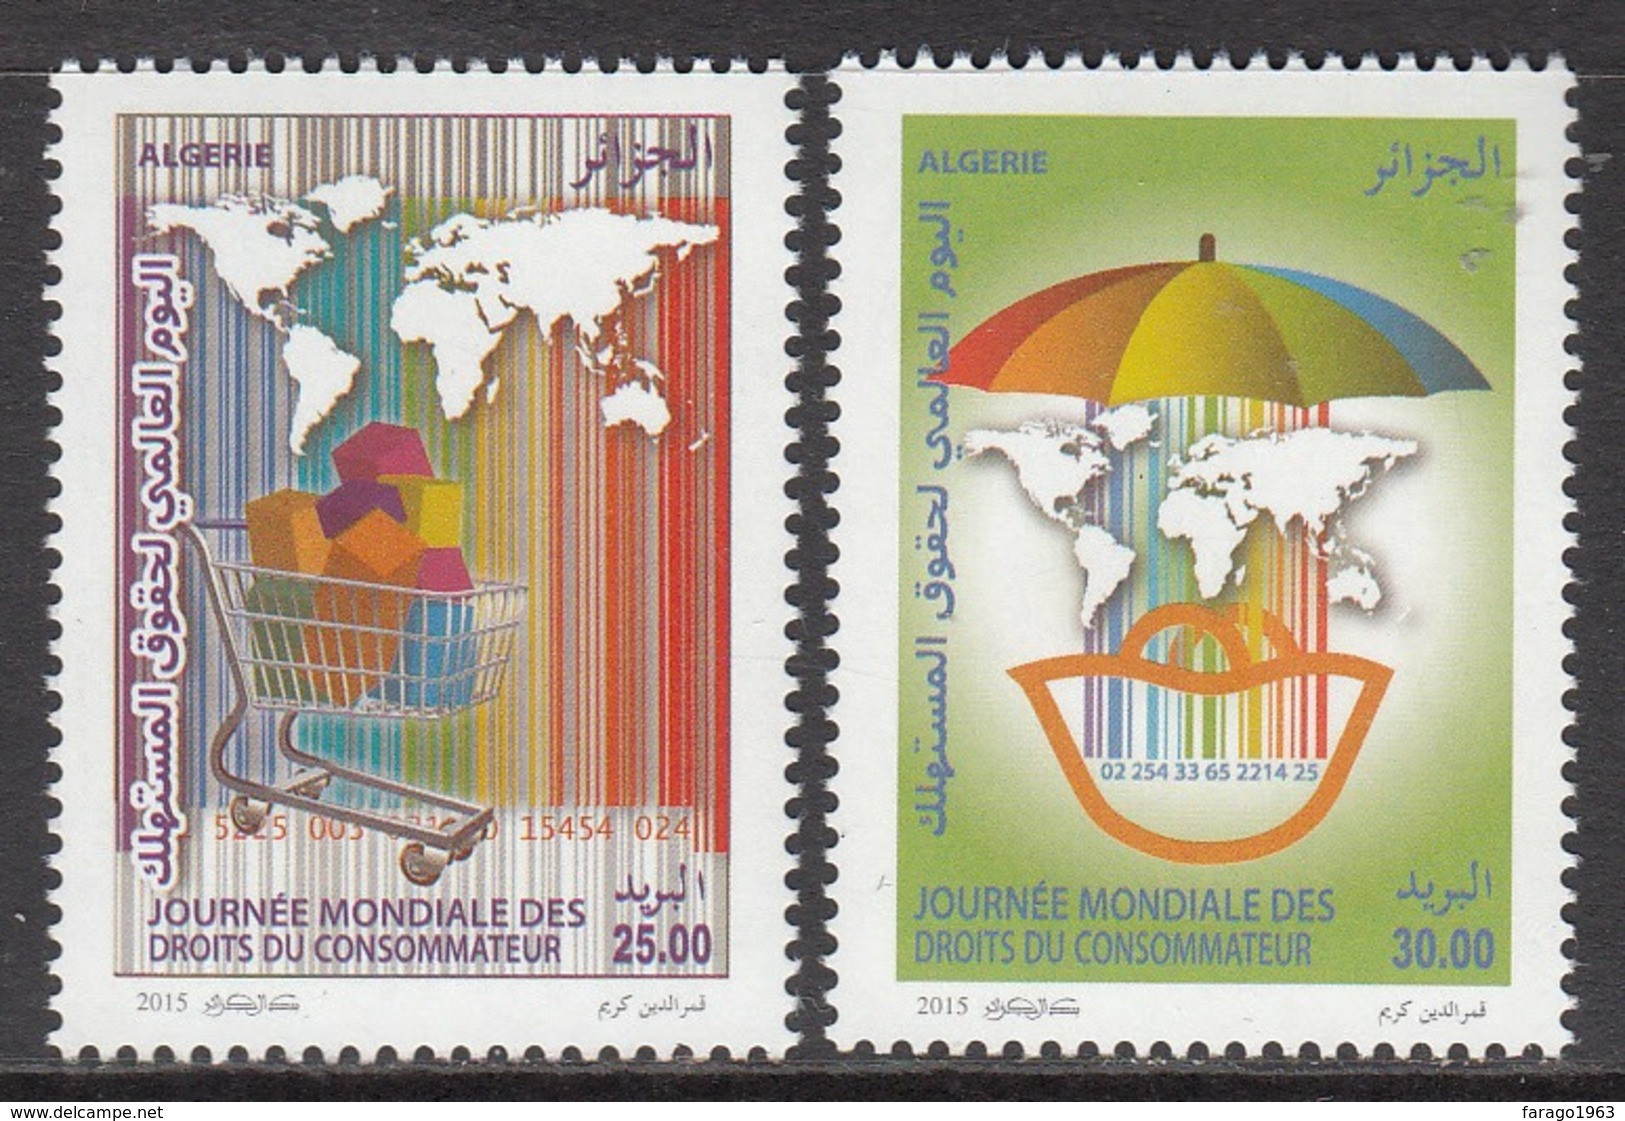 2015 Algeria Algerie Consumer Rights Complete Set Of 2 MNH - Algerije (1962-...)